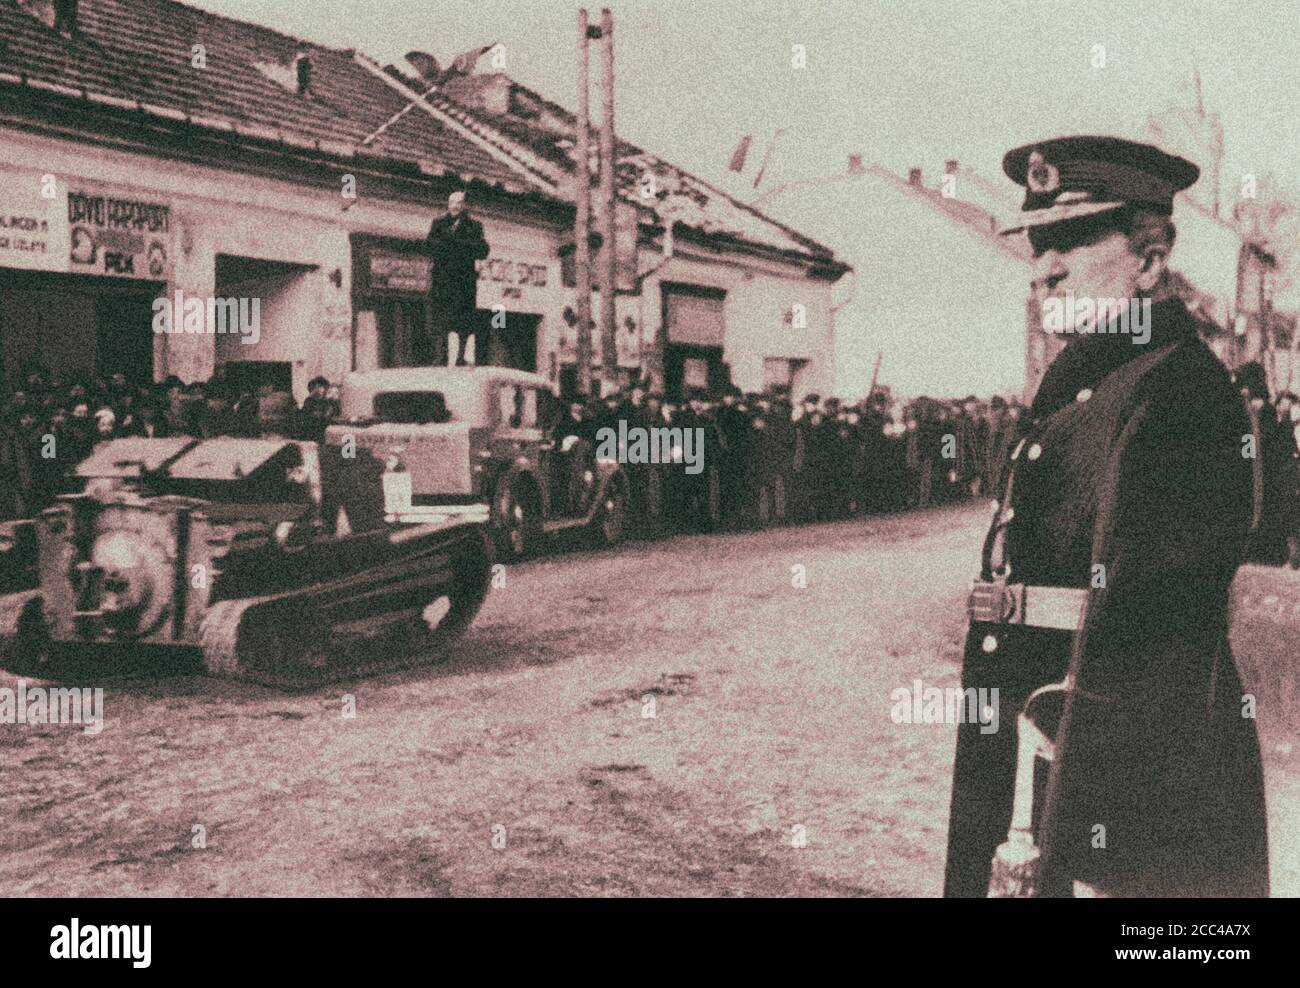 Reggente del Regno di Ungheria, il fedele alleato di Adolf Hitler Miklos Horthy (1868-1957) prende la sfilata della forza armata ungherese. Foto Stock